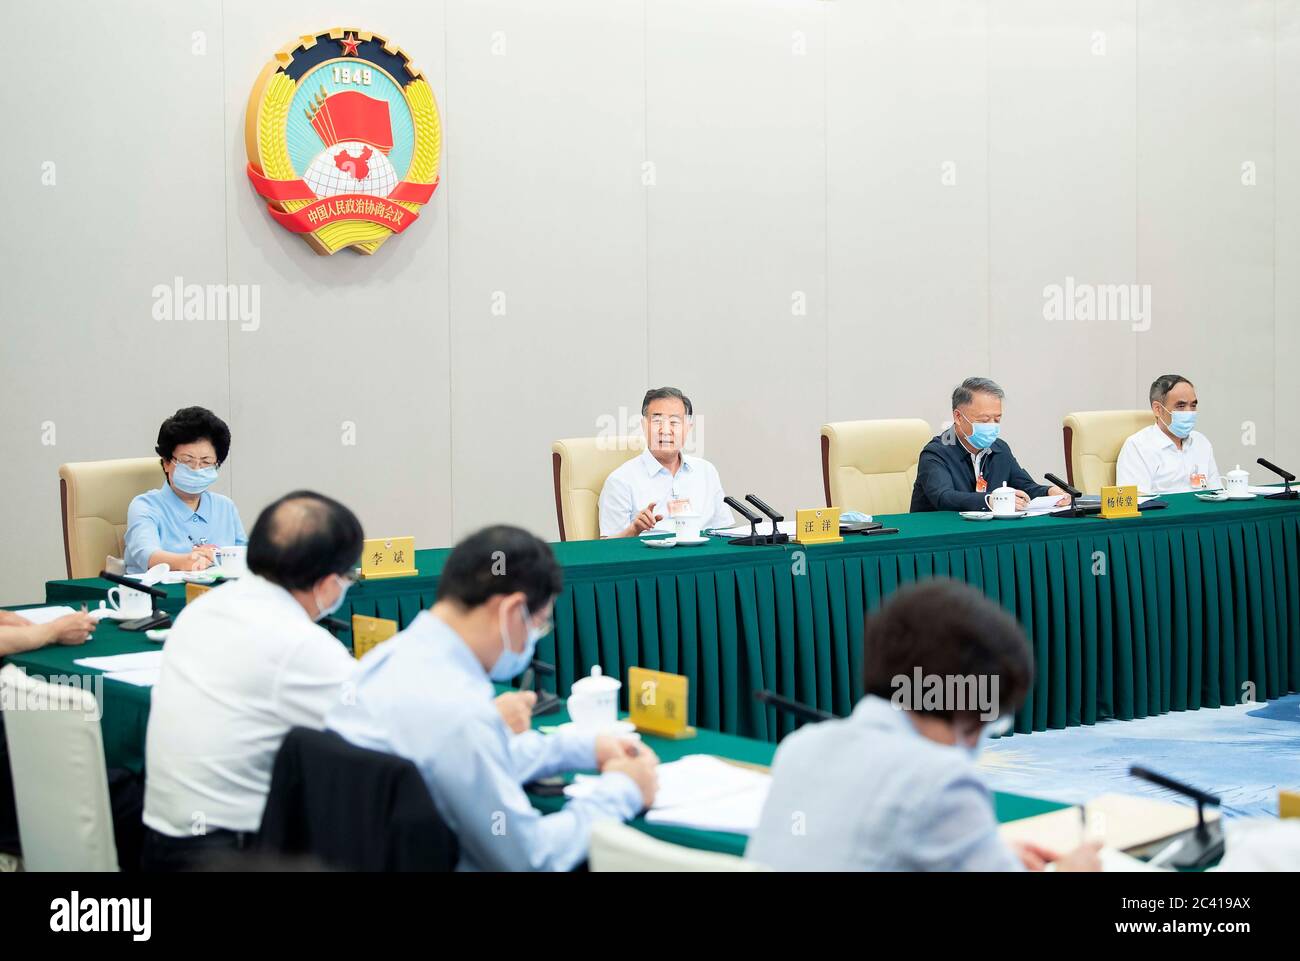 (200623) -- PECHINO, 23 giugno 2020 (Xinhua) -- Wang Yang, membro del Comitato Centrale permanente dell'Ufficio politico del Comitato Centrale del Partito Comunista Cinese e presidente del Comitato Nazionale della Conferenza Politica consultiva popolare Cinese (CPPCC), partecipa alle discussioni del Comitato a Pechino, capitale della Cina, 23 giugno 2020. Martedì i consulenti politici cinesi hanno tenuto discussioni di gruppo per discutere la vittoria della lotta contro la povertà e la creazione di un meccanismo a lungo termine per affrontare la povertà relativa. Le discussioni si sono svolte in una riunione permanente del comitato permanente della Foto Stock